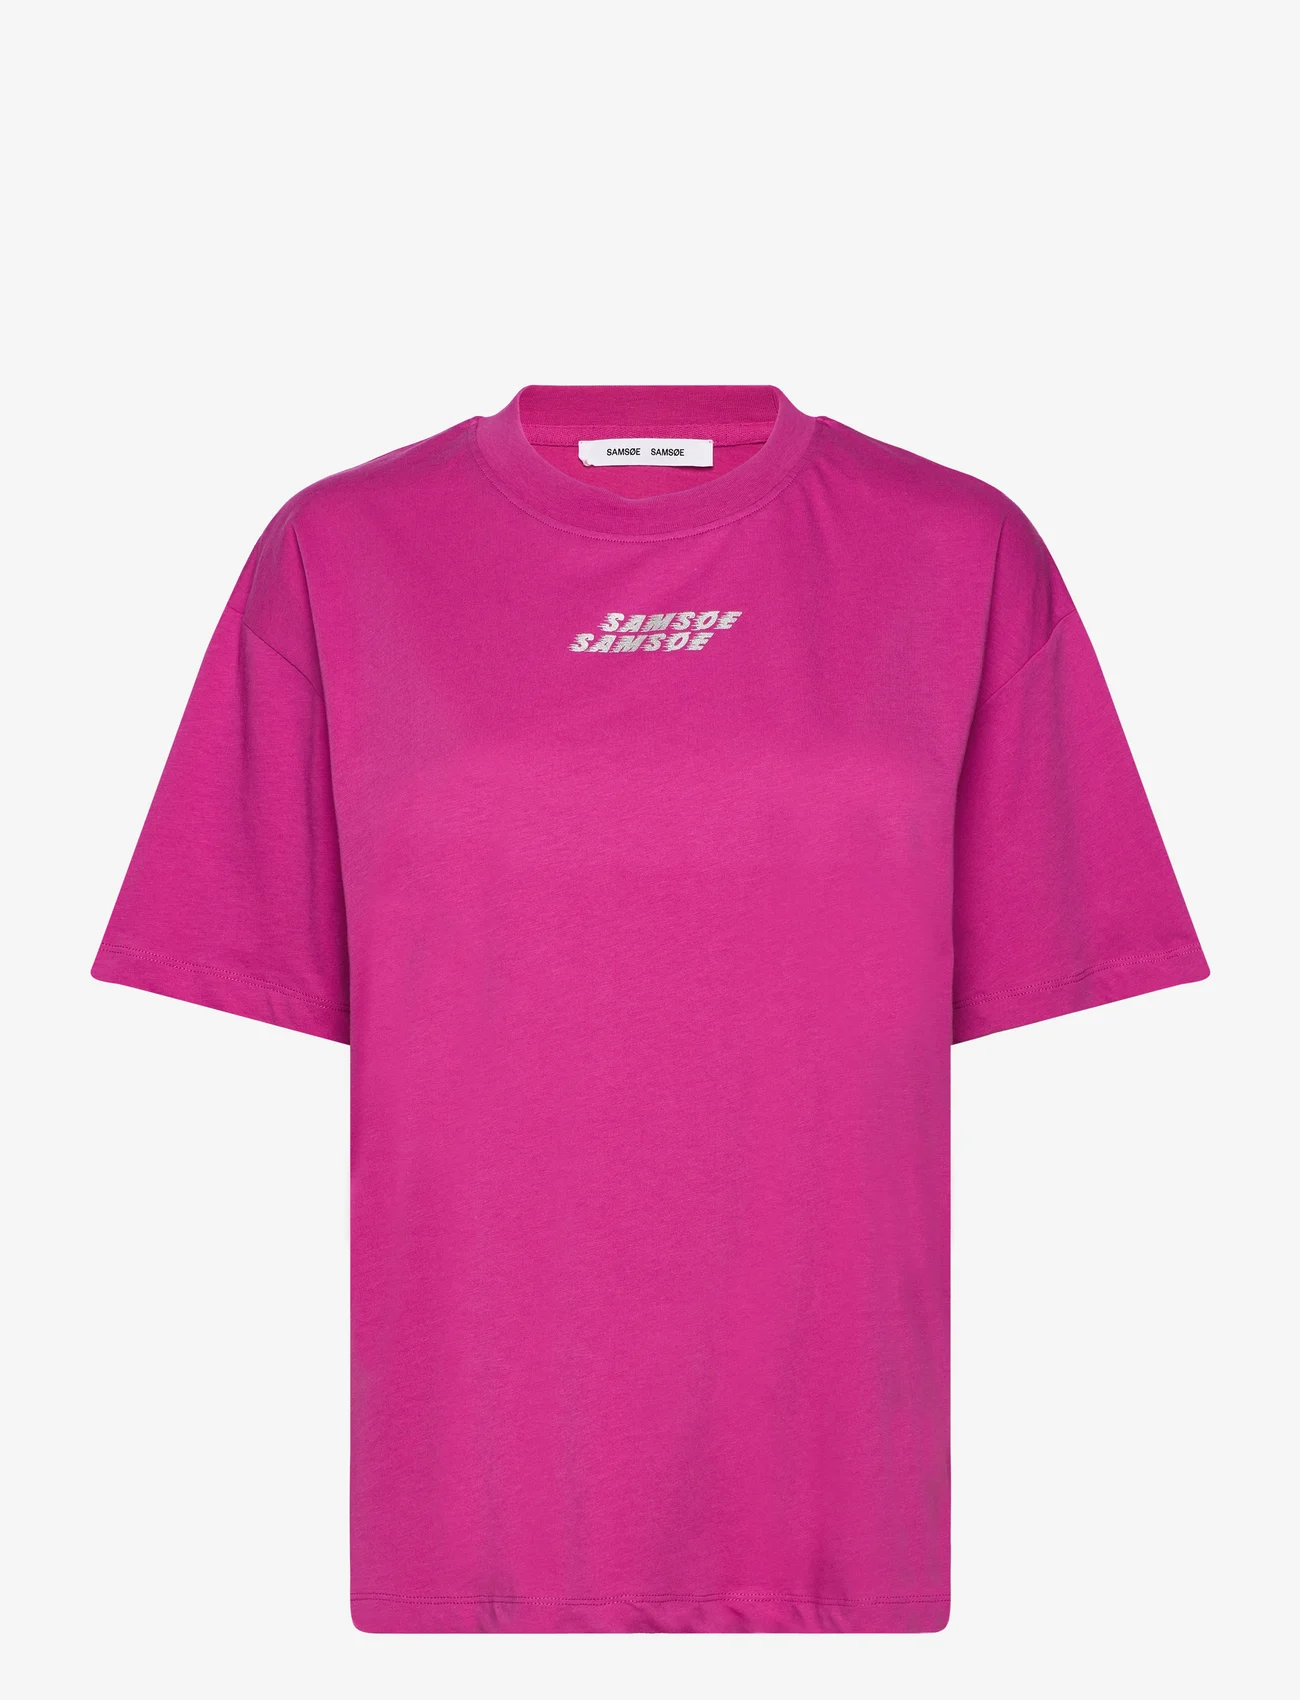 Samsøe Samsøe - Eira t-shirt 10379 - t-shirts - rose violet - 0